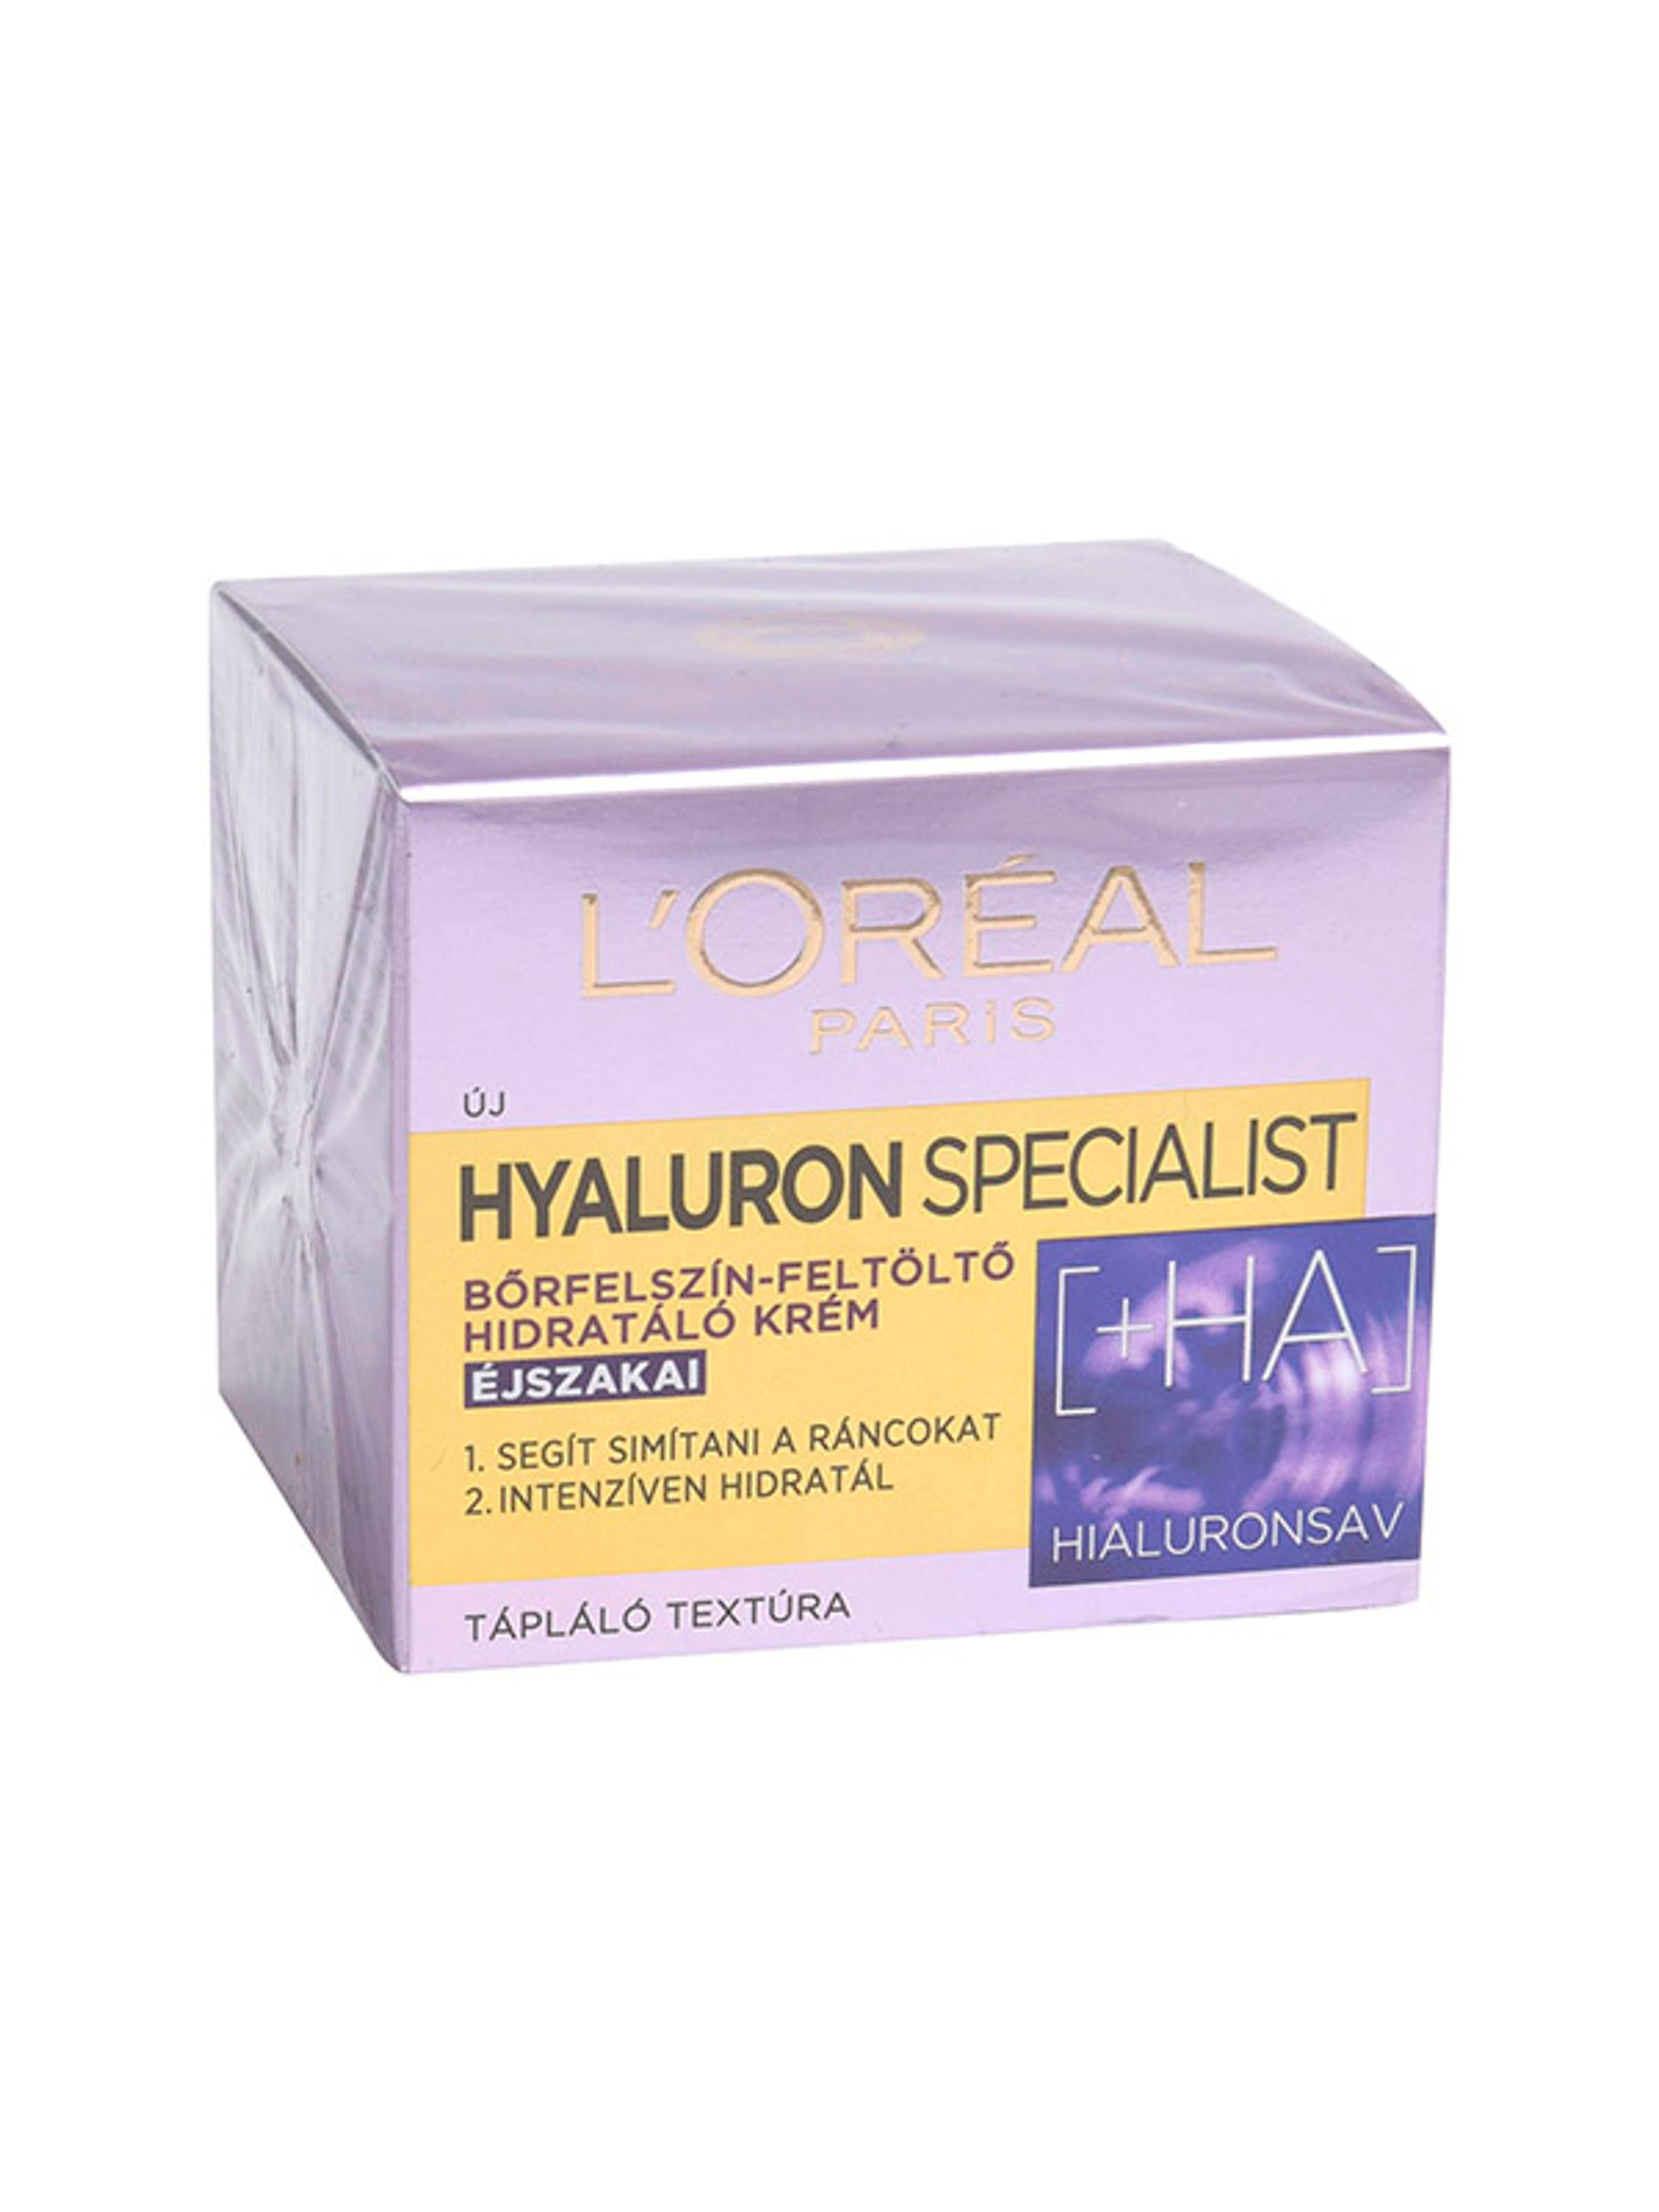 L'Oréal Paris Hyaluron Specialist éjszakai arckrém - 50 ml